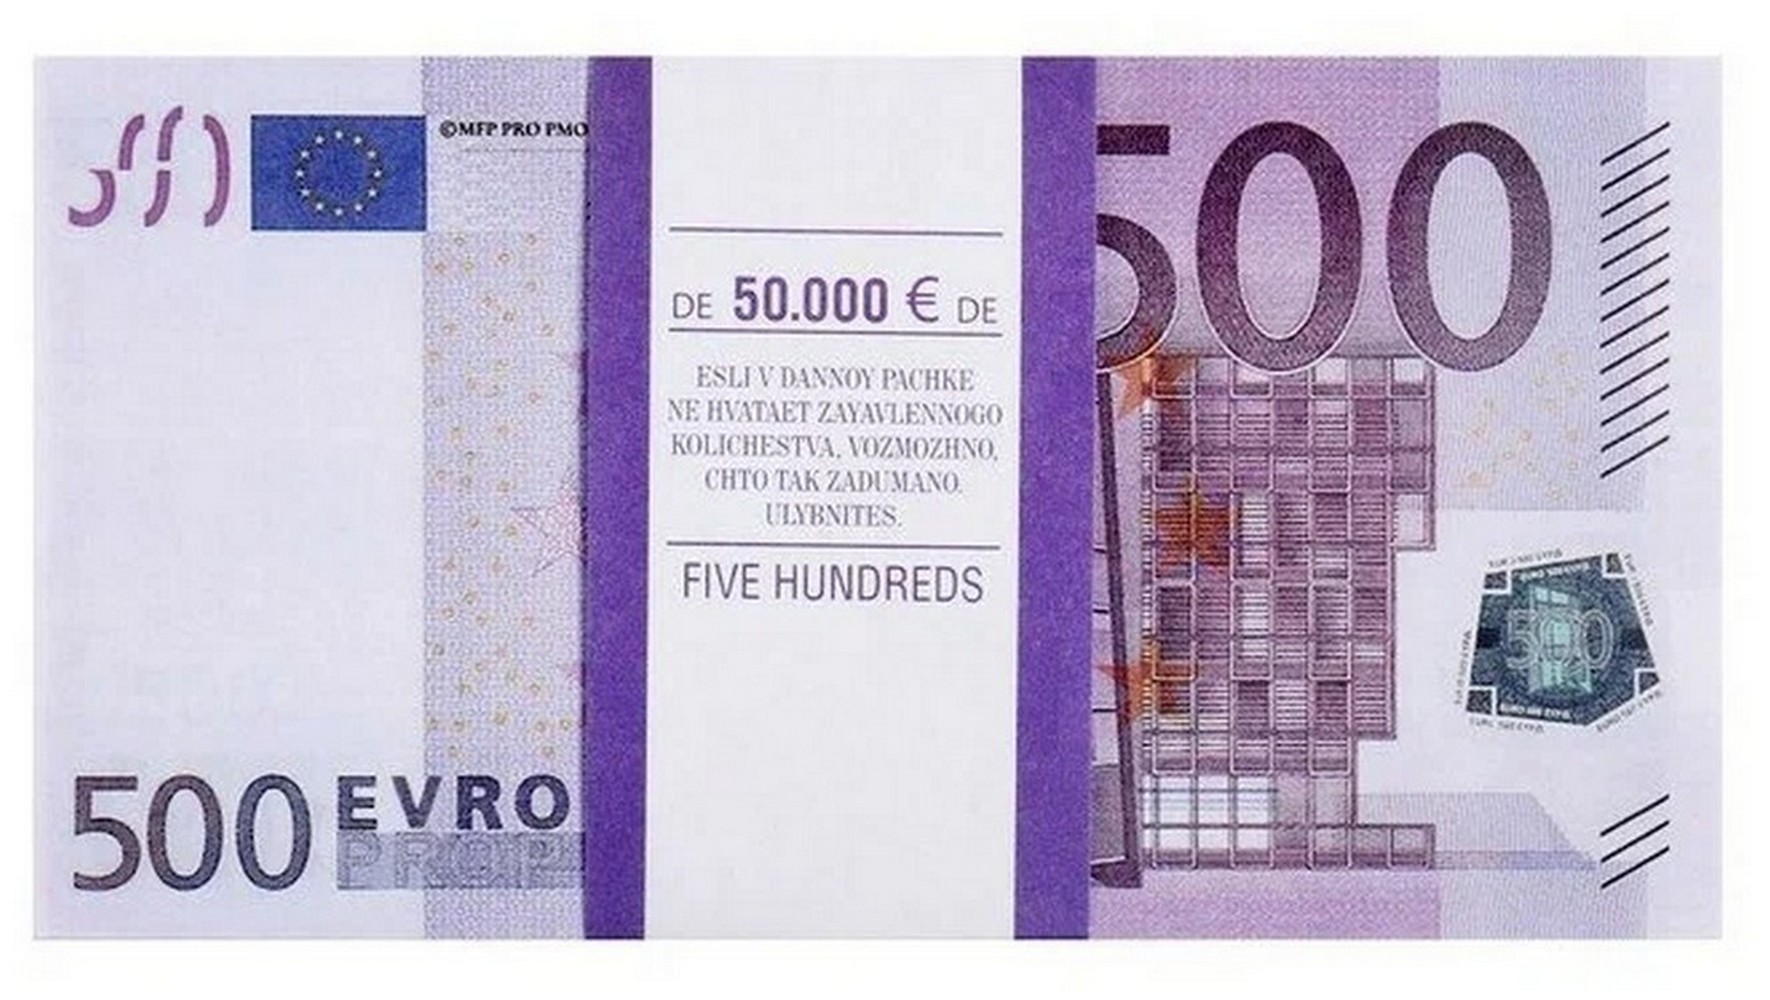 500 евро купить. Банкнота 500 евро. Пачки евро. Банкнота 500 евро фото. Купюра 500 евро новые и старые сравнения.